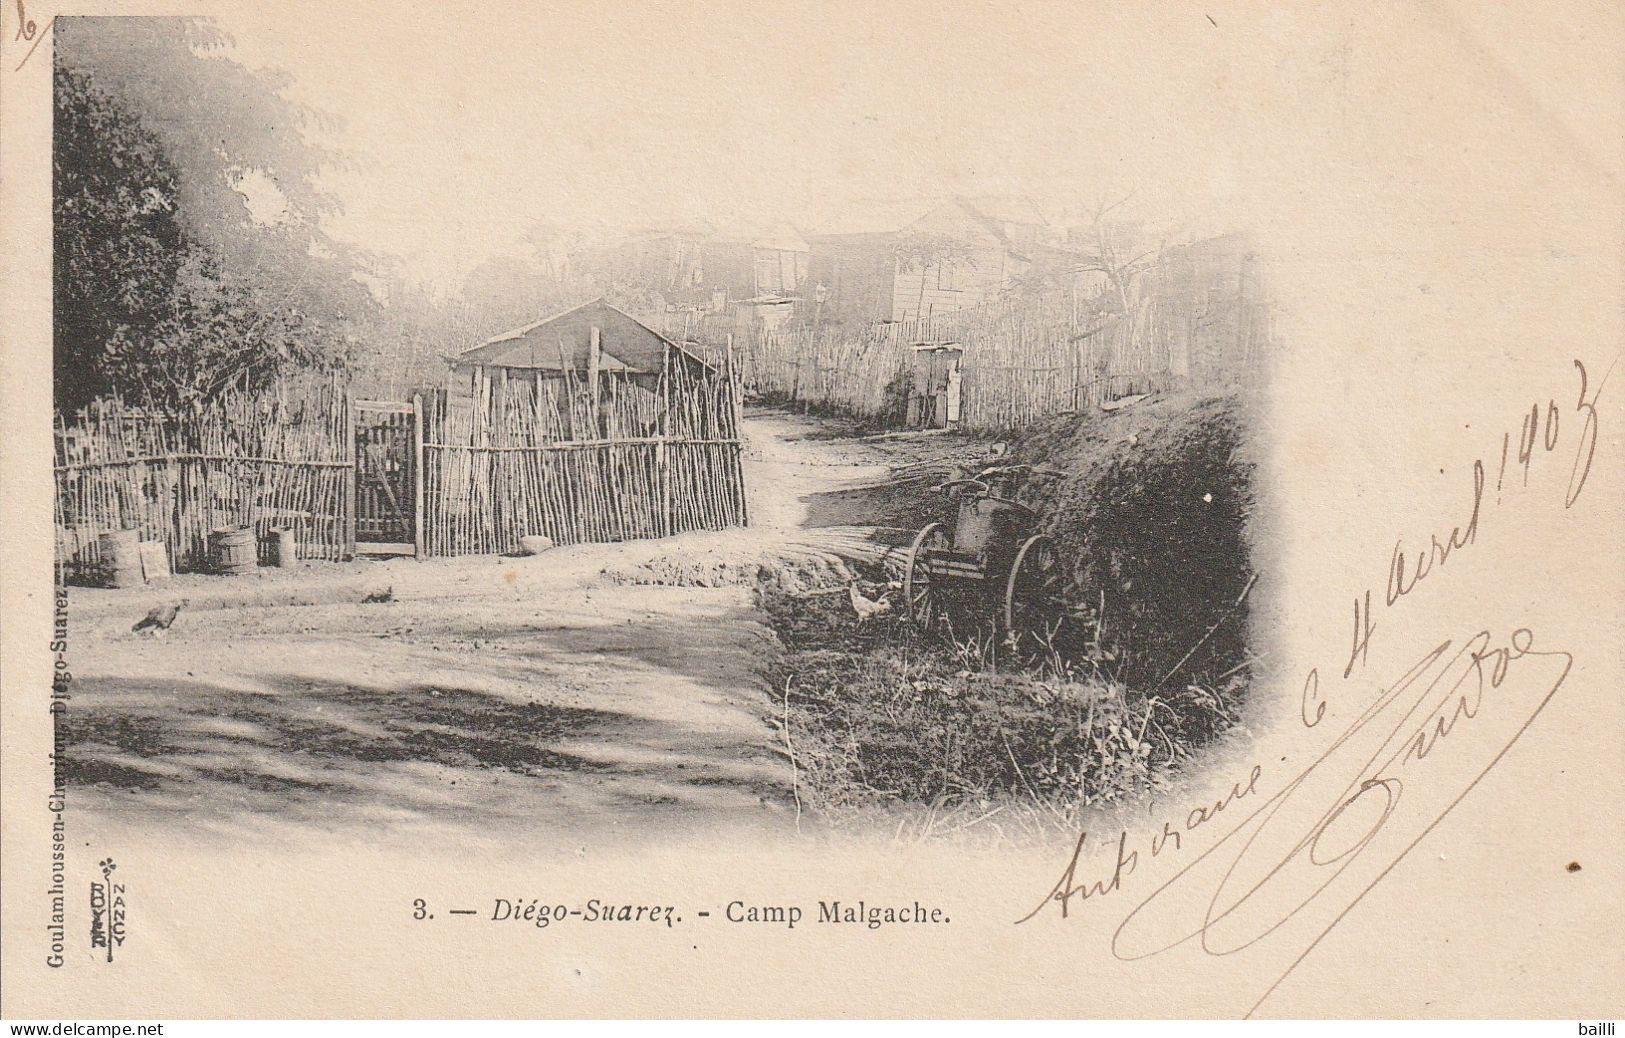 Madagascar Carte Postale Diégo Suarez Pour La France 1903 - Cartas & Documentos